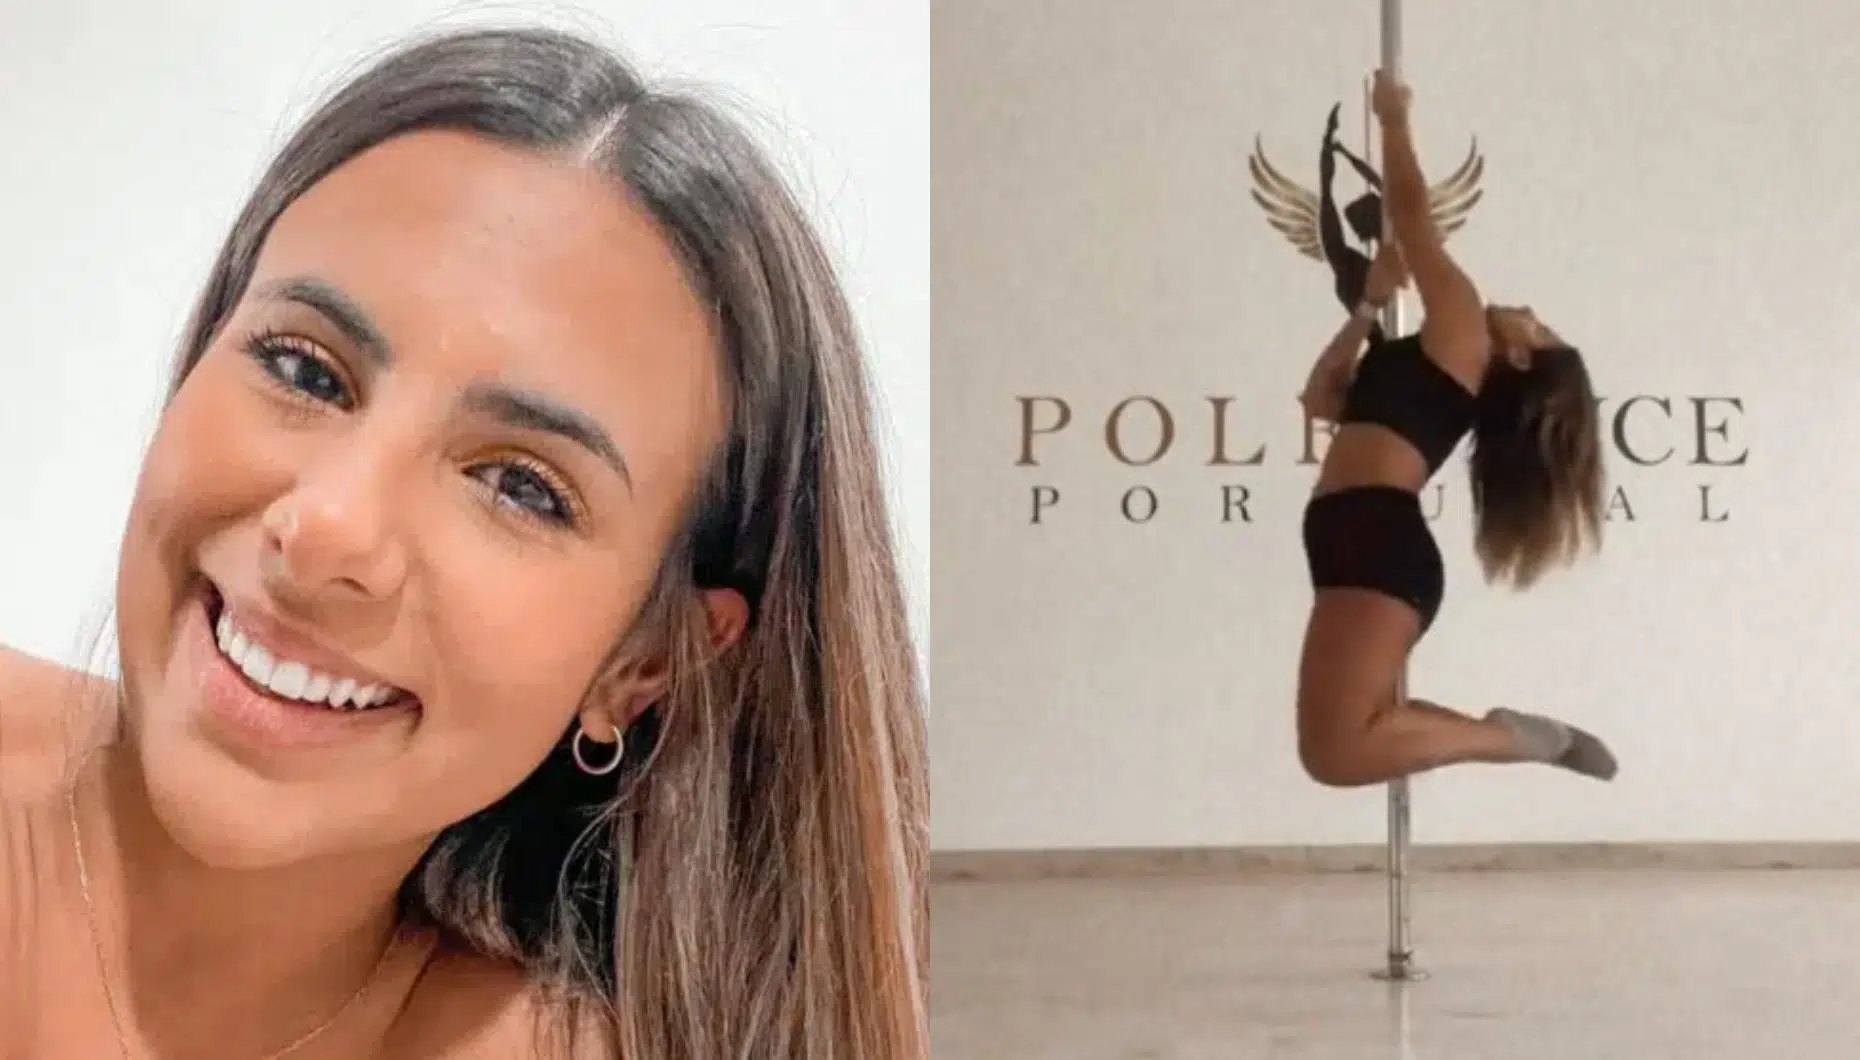 Joana Albuquerque, Poledance